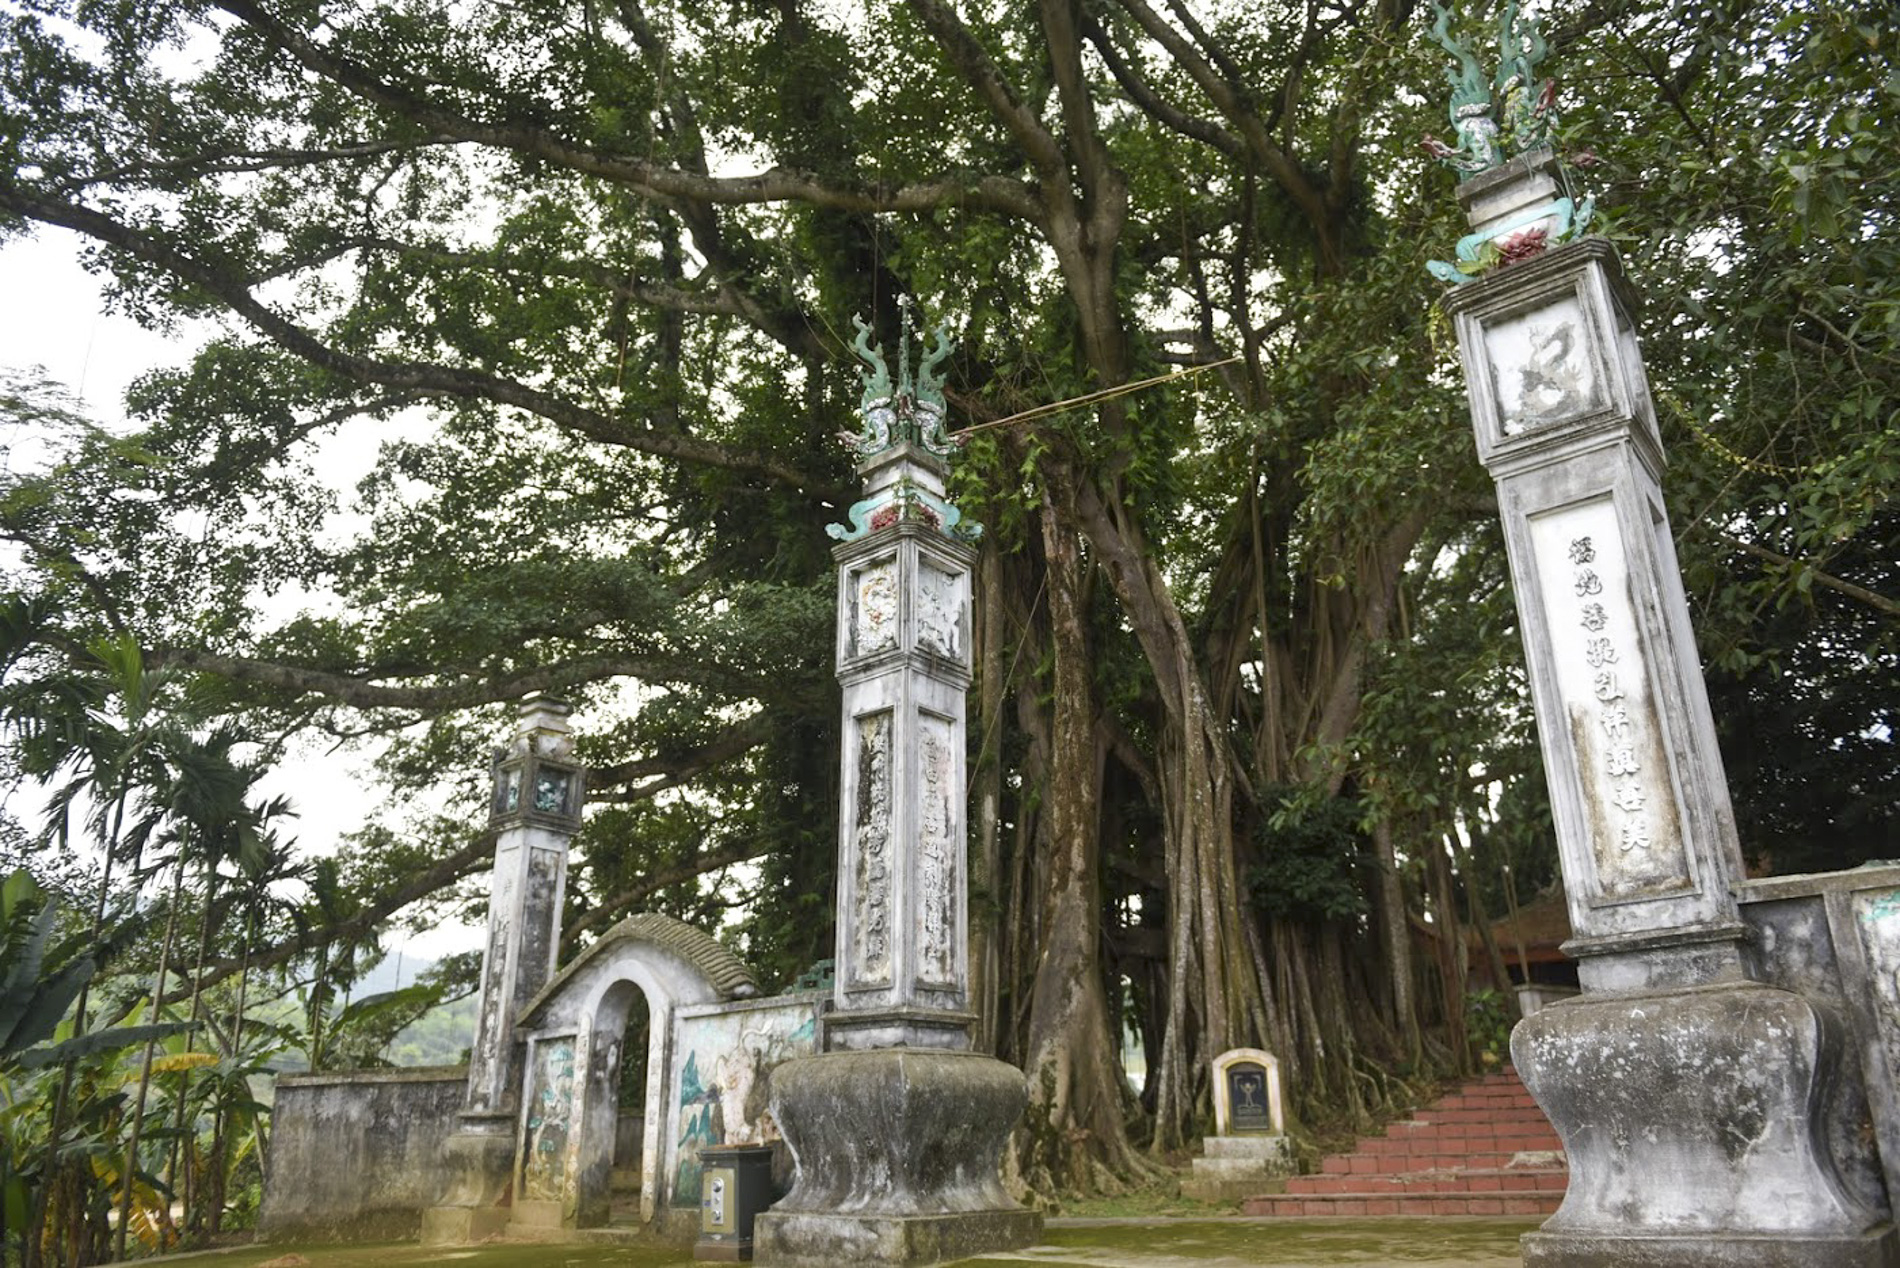 Chiêm ngưỡng "báu vật" xanh bên đền cổ thờ Tản Viên Sơn Thánh - 1